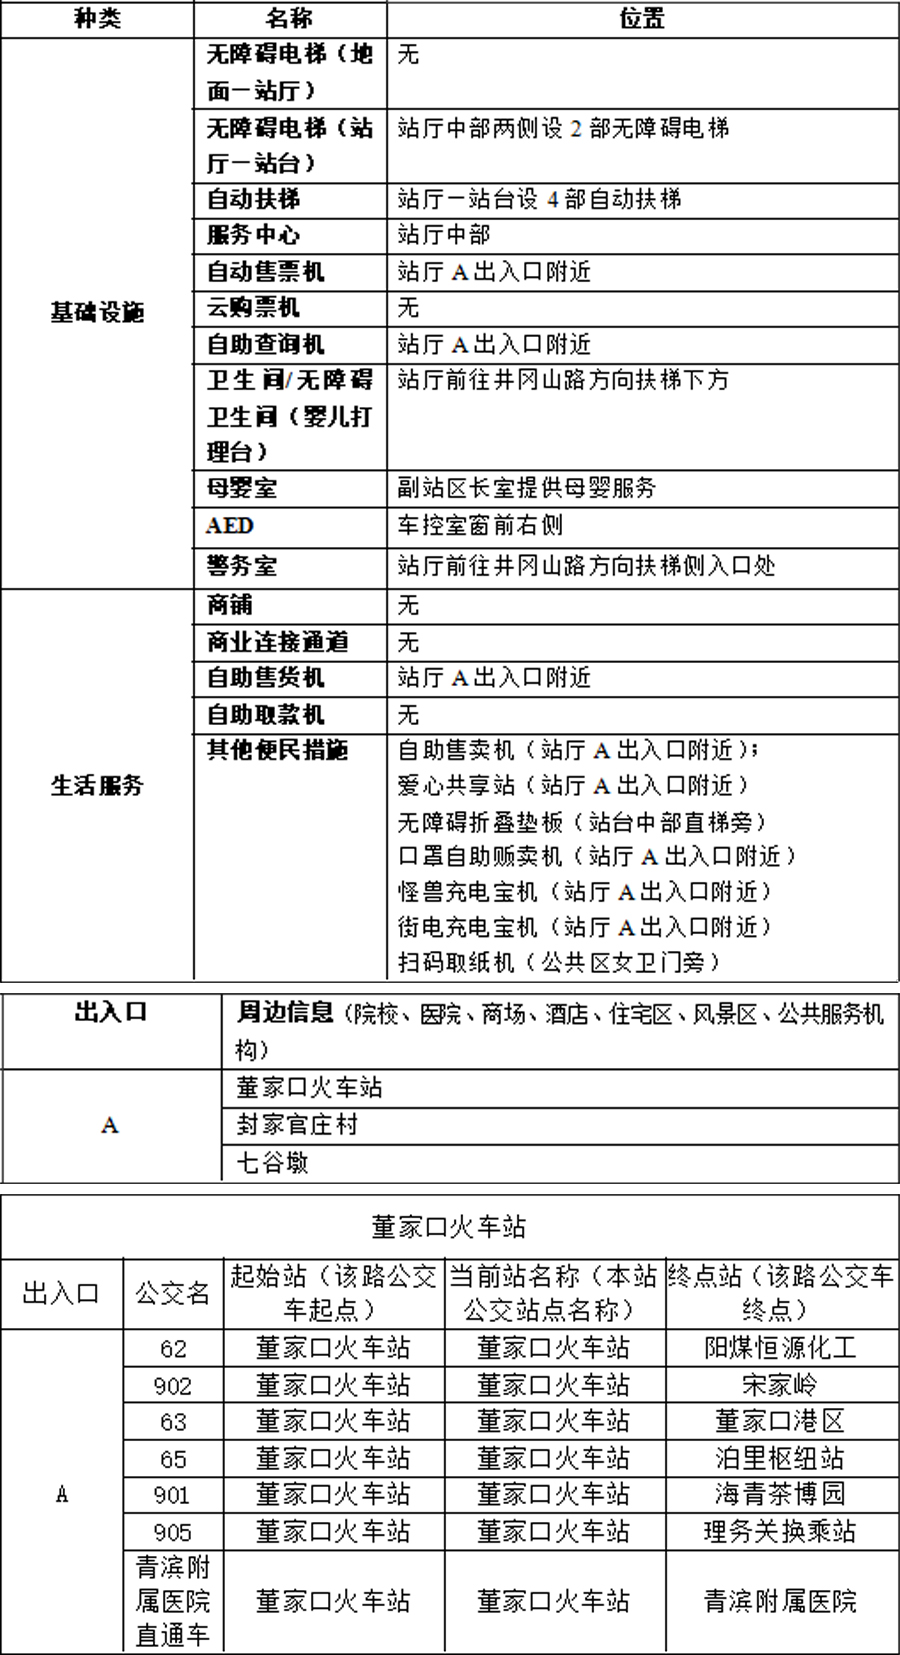 附件1：青岛地铁APP站点信息-董家口火车站-2023.03.21(1)(1) 拷贝.jpg